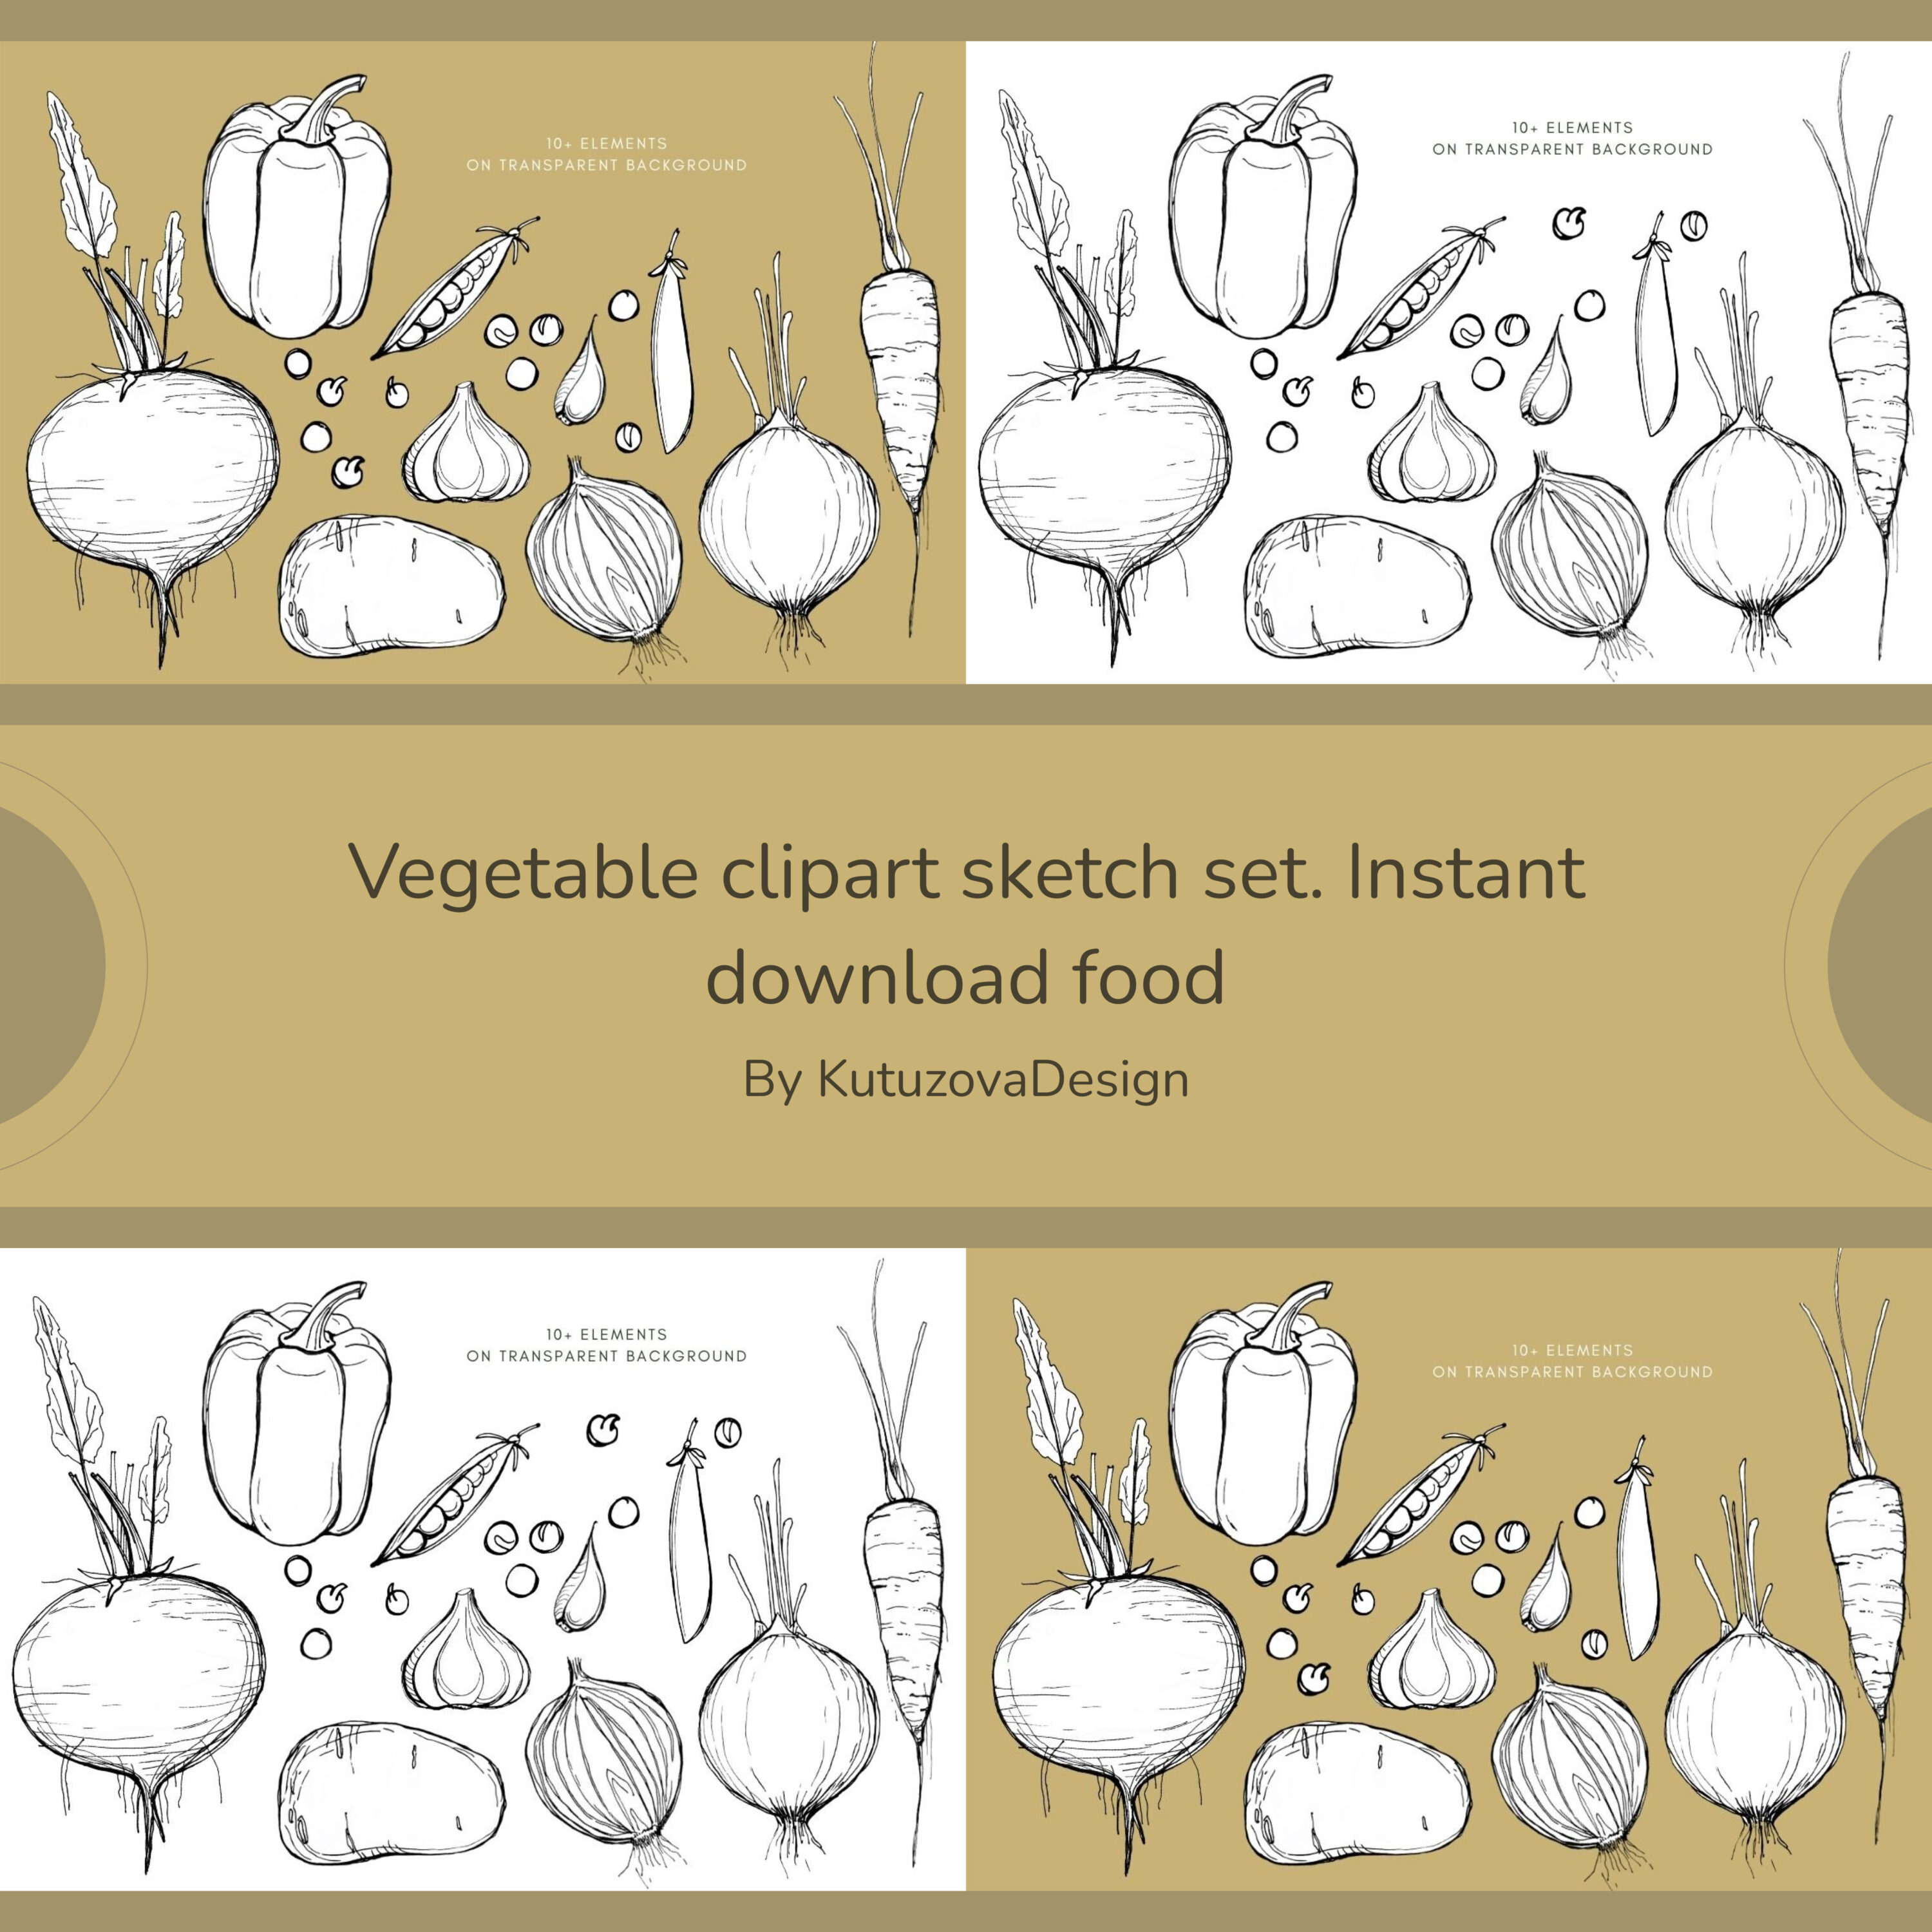 Prints of vegetable clipart sketch set. instant download food.